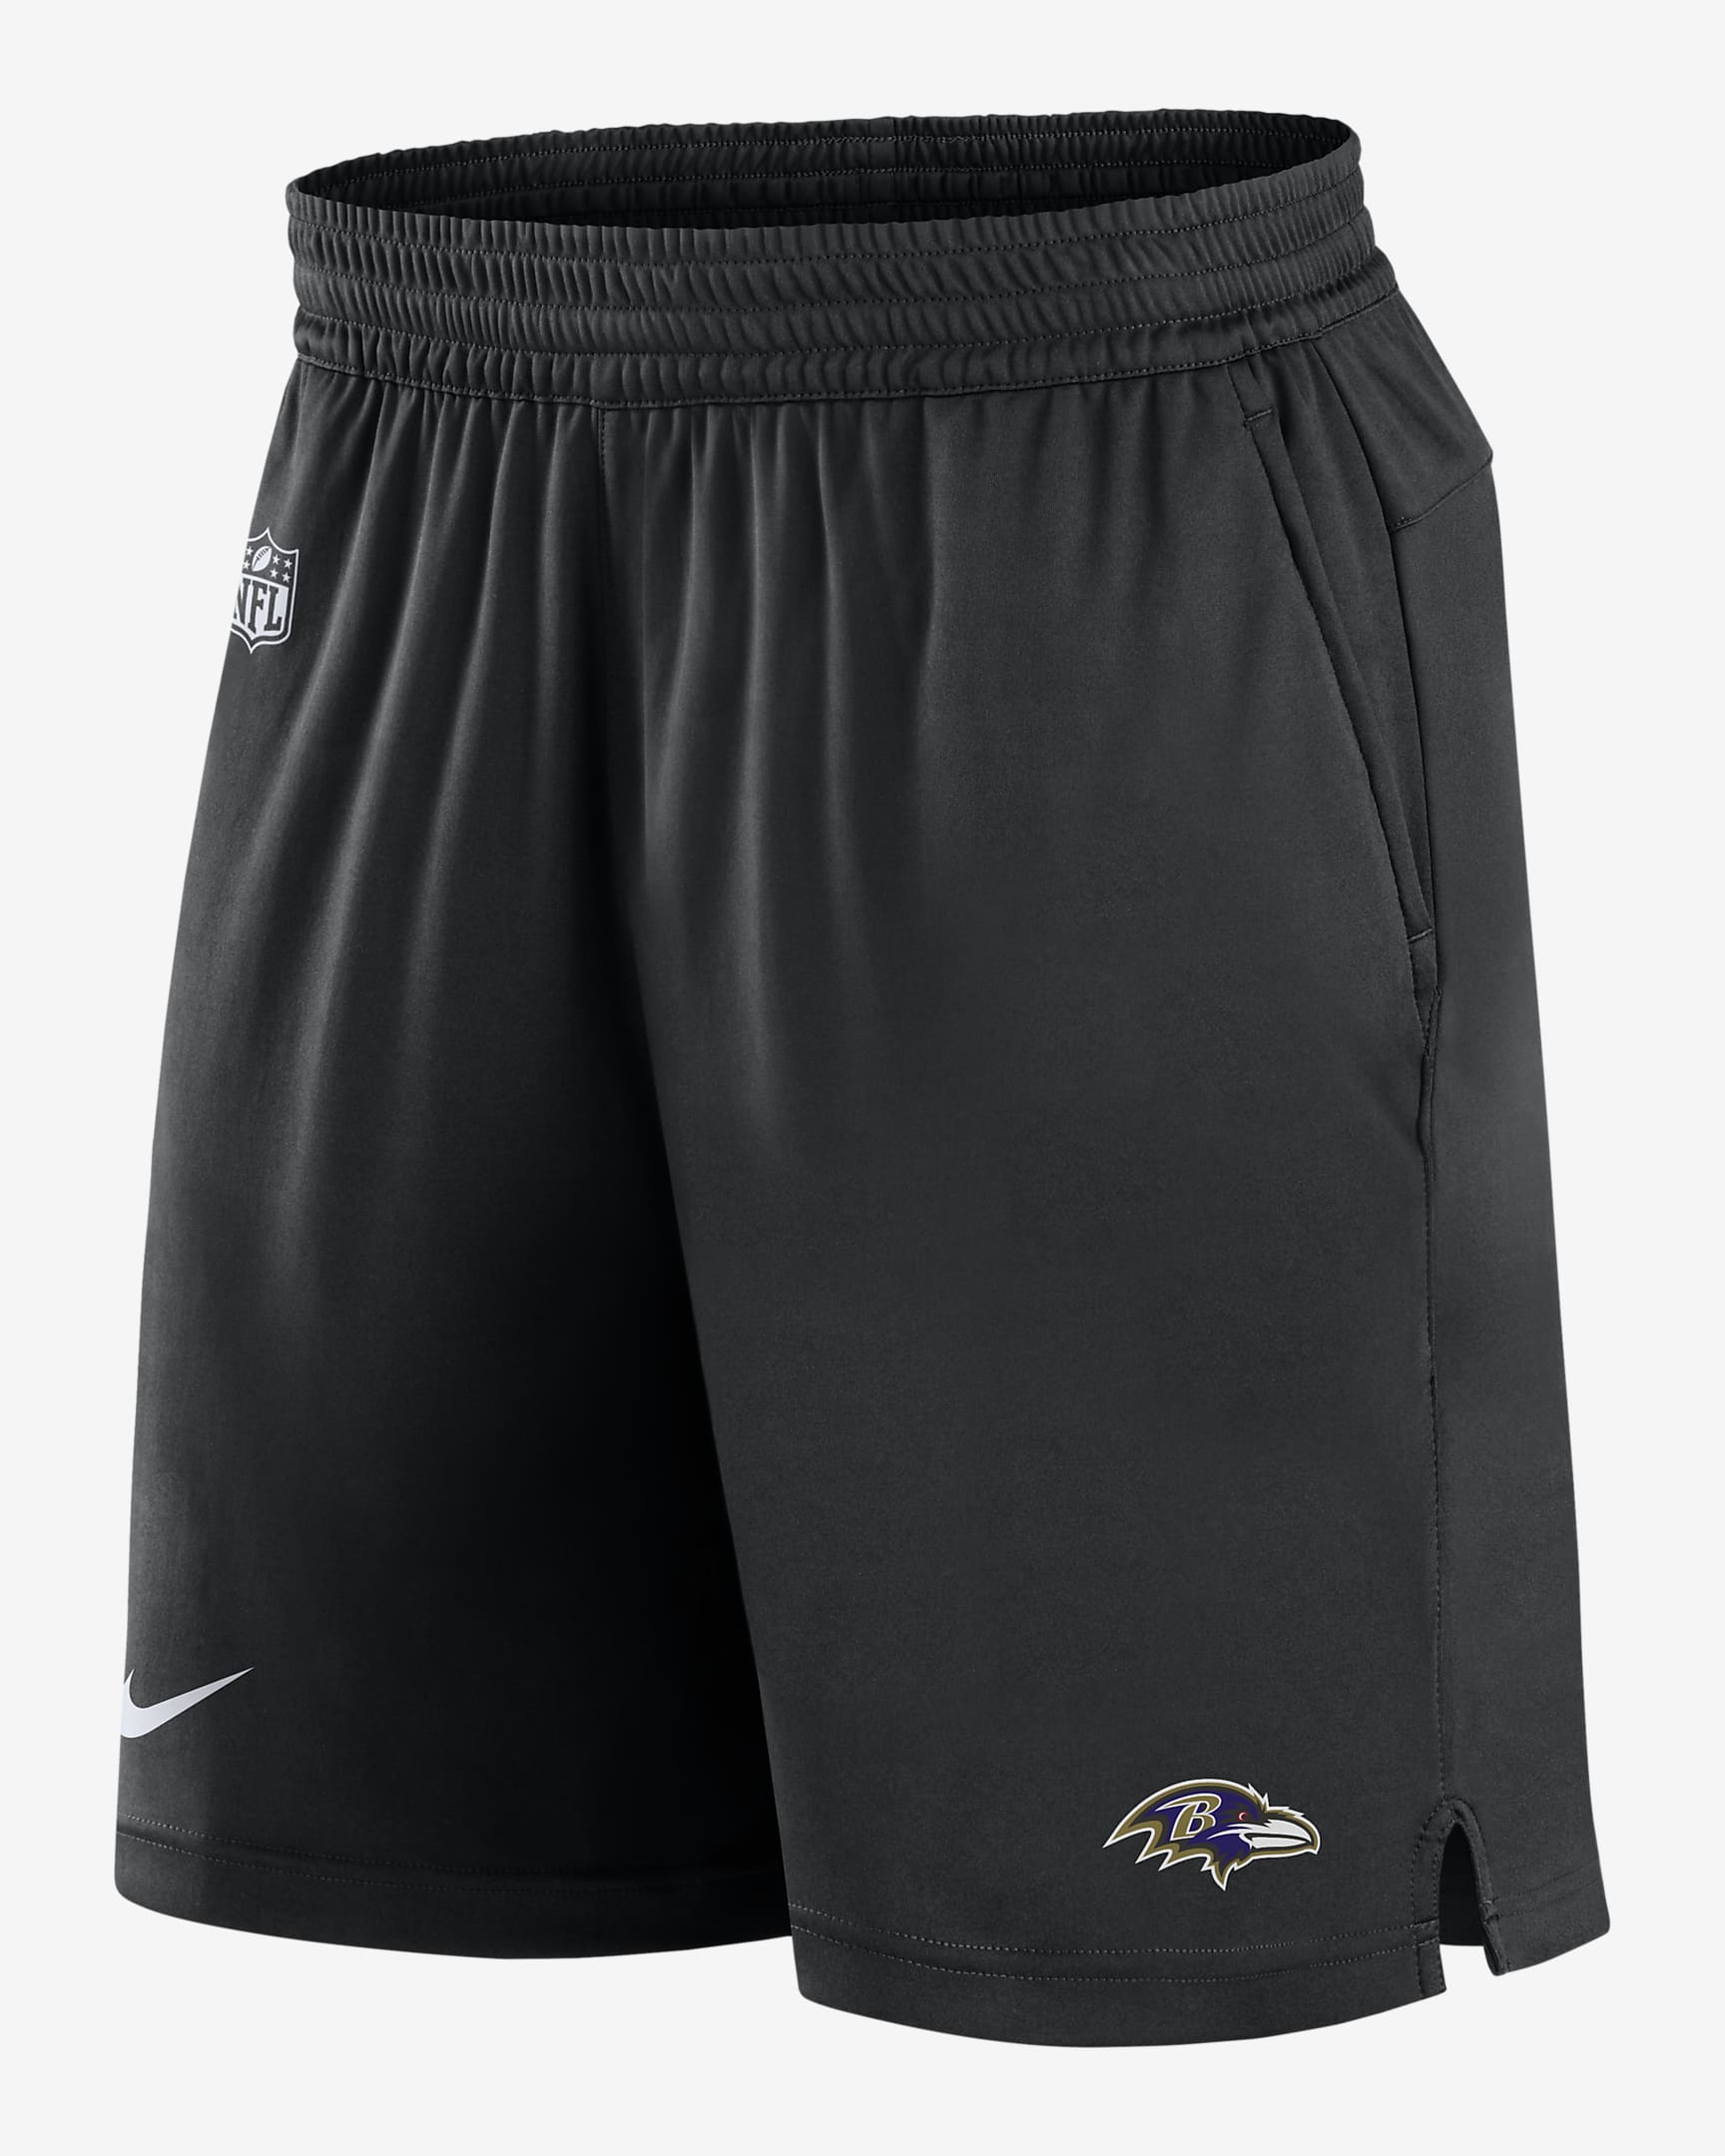 Shorts para hombre Nike Dri-FIT Sideline (NFL Baltimore Ravens). Nike.com